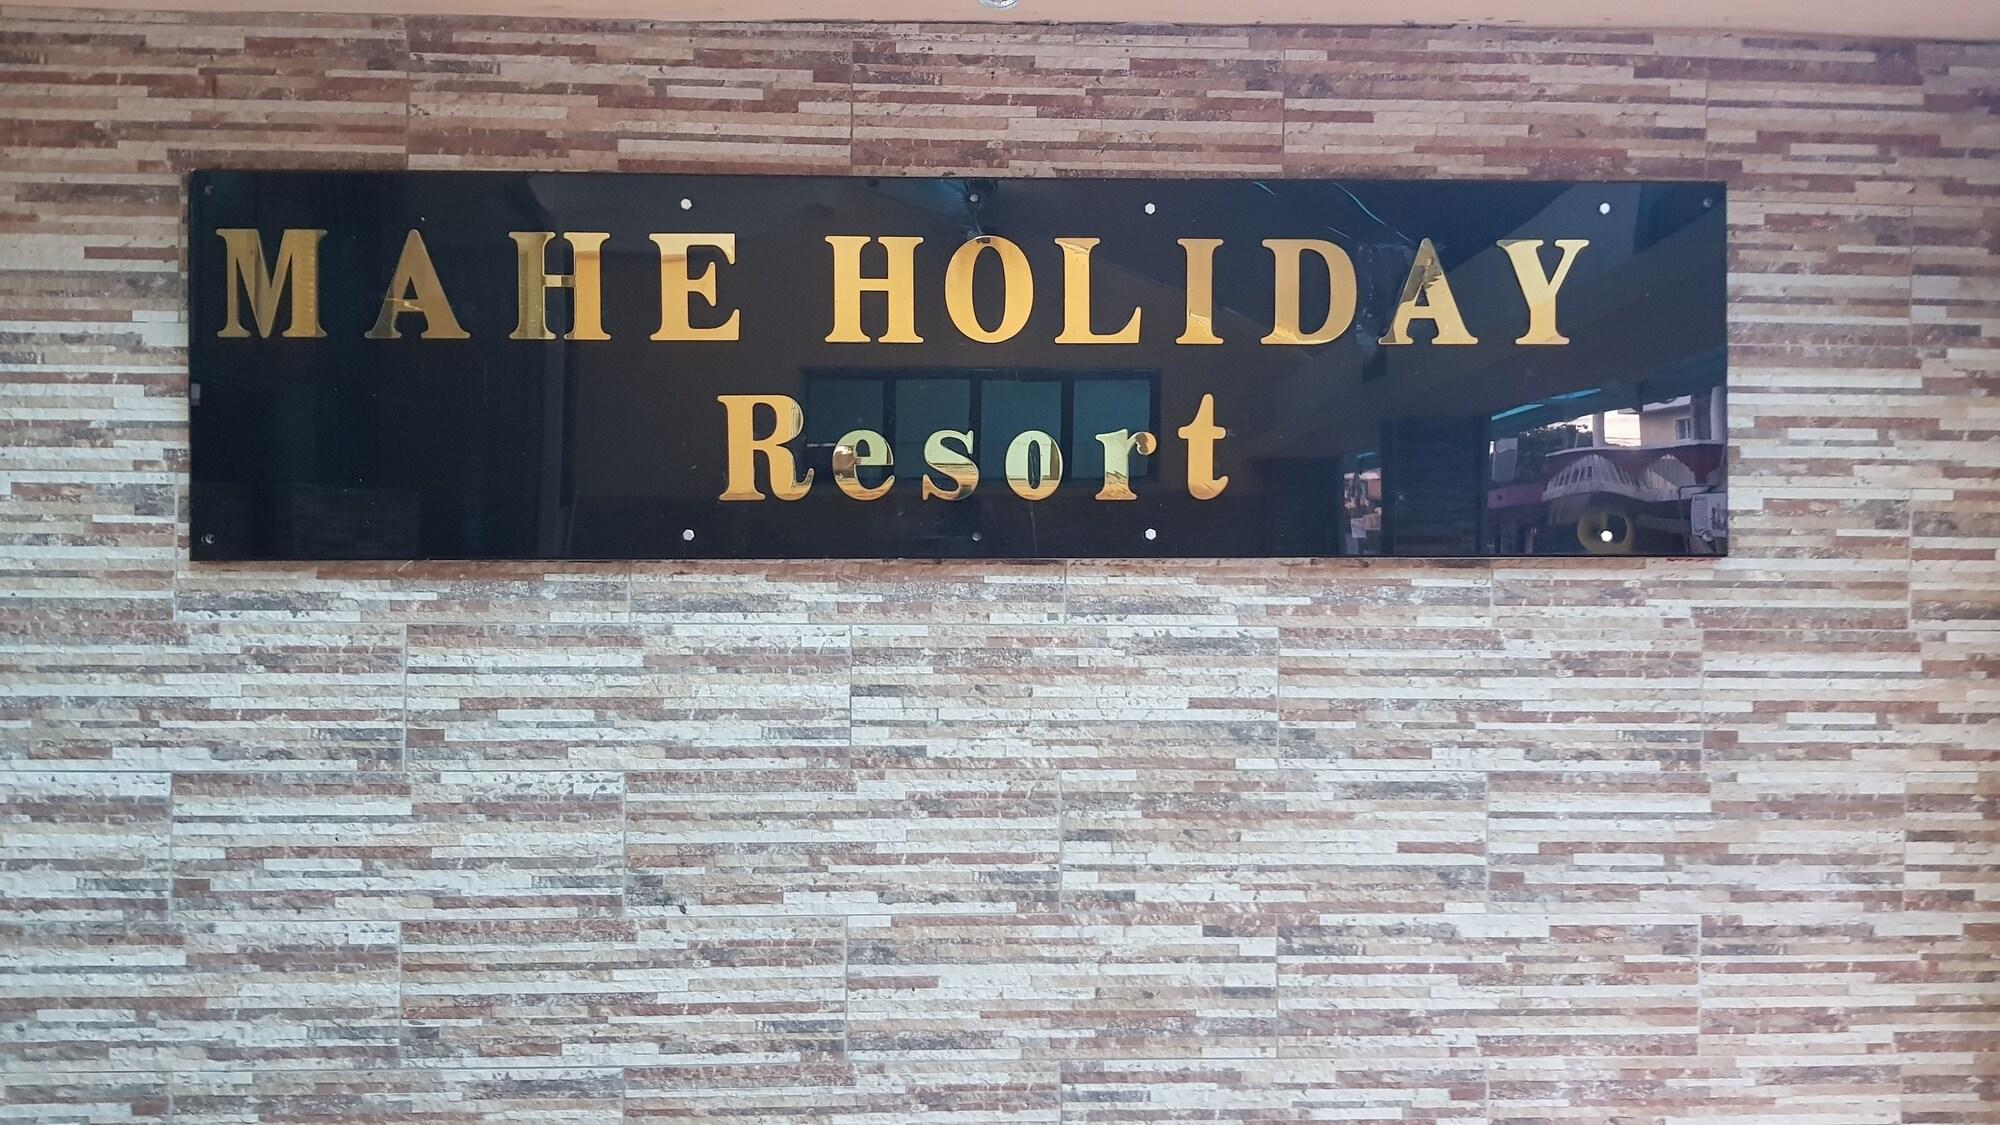 Mahe Holiday Resort